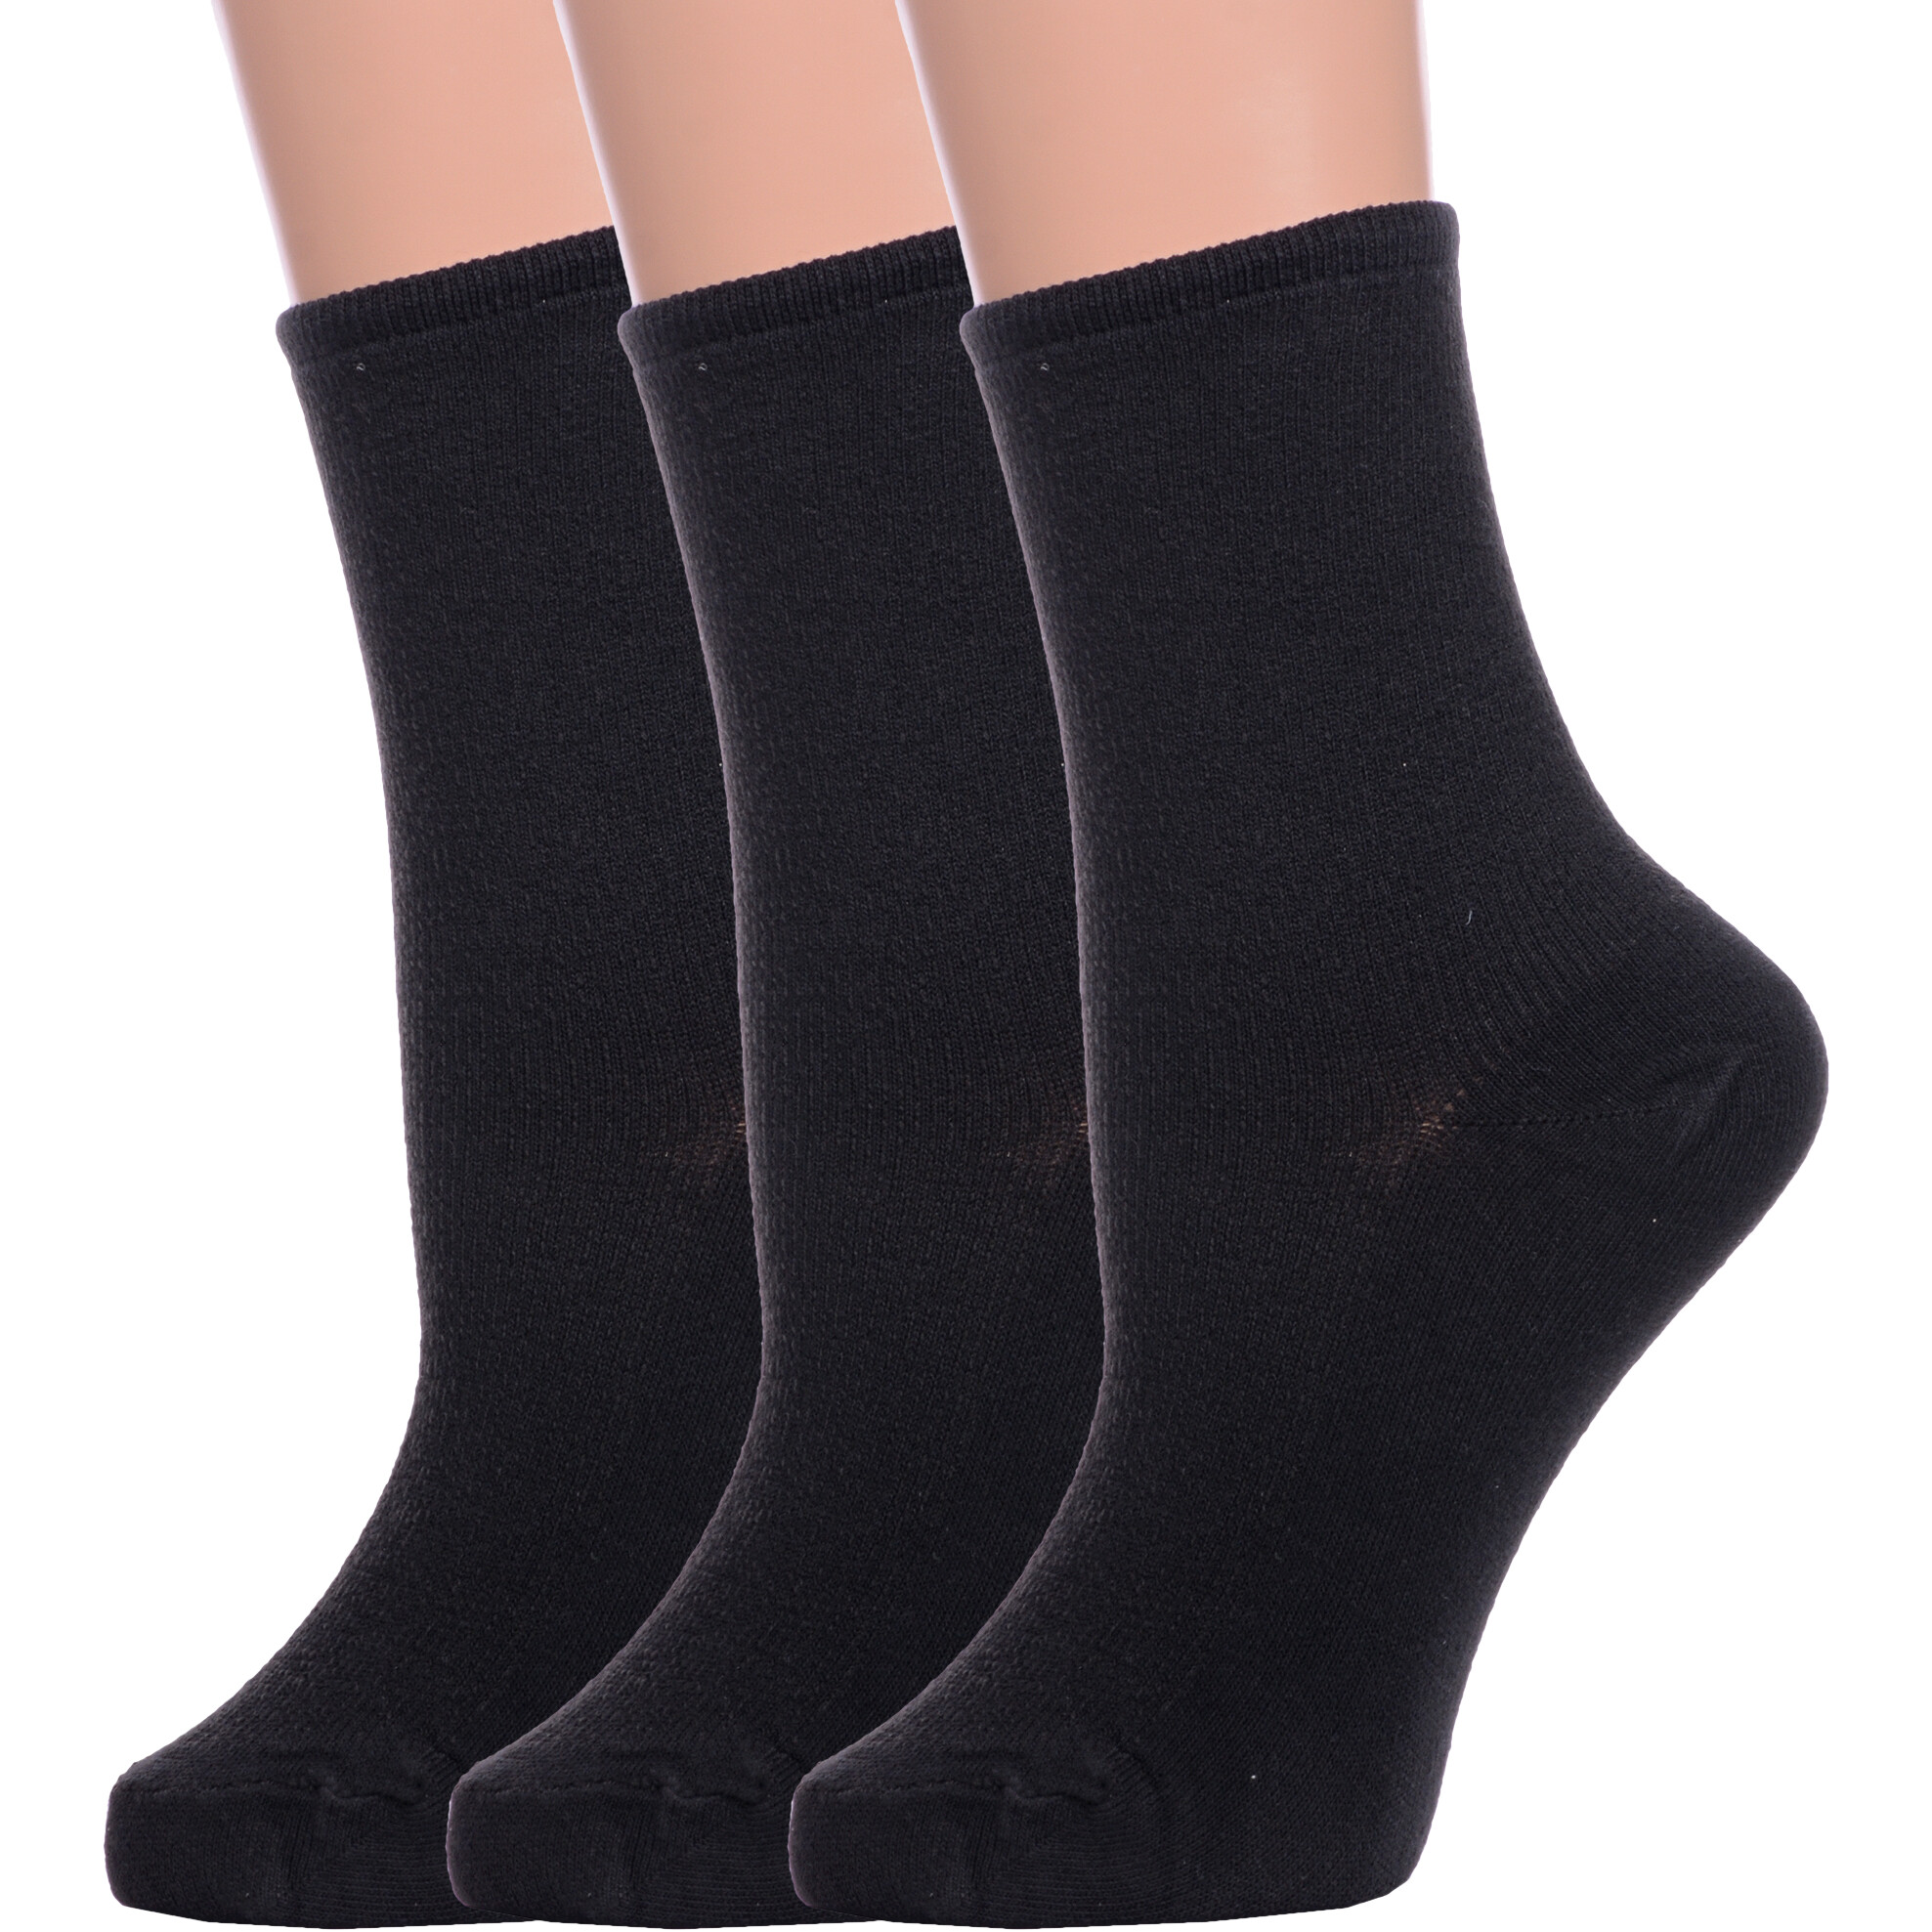 Комплект носков женских Альтаир 3-М198 черных 25 3 пары